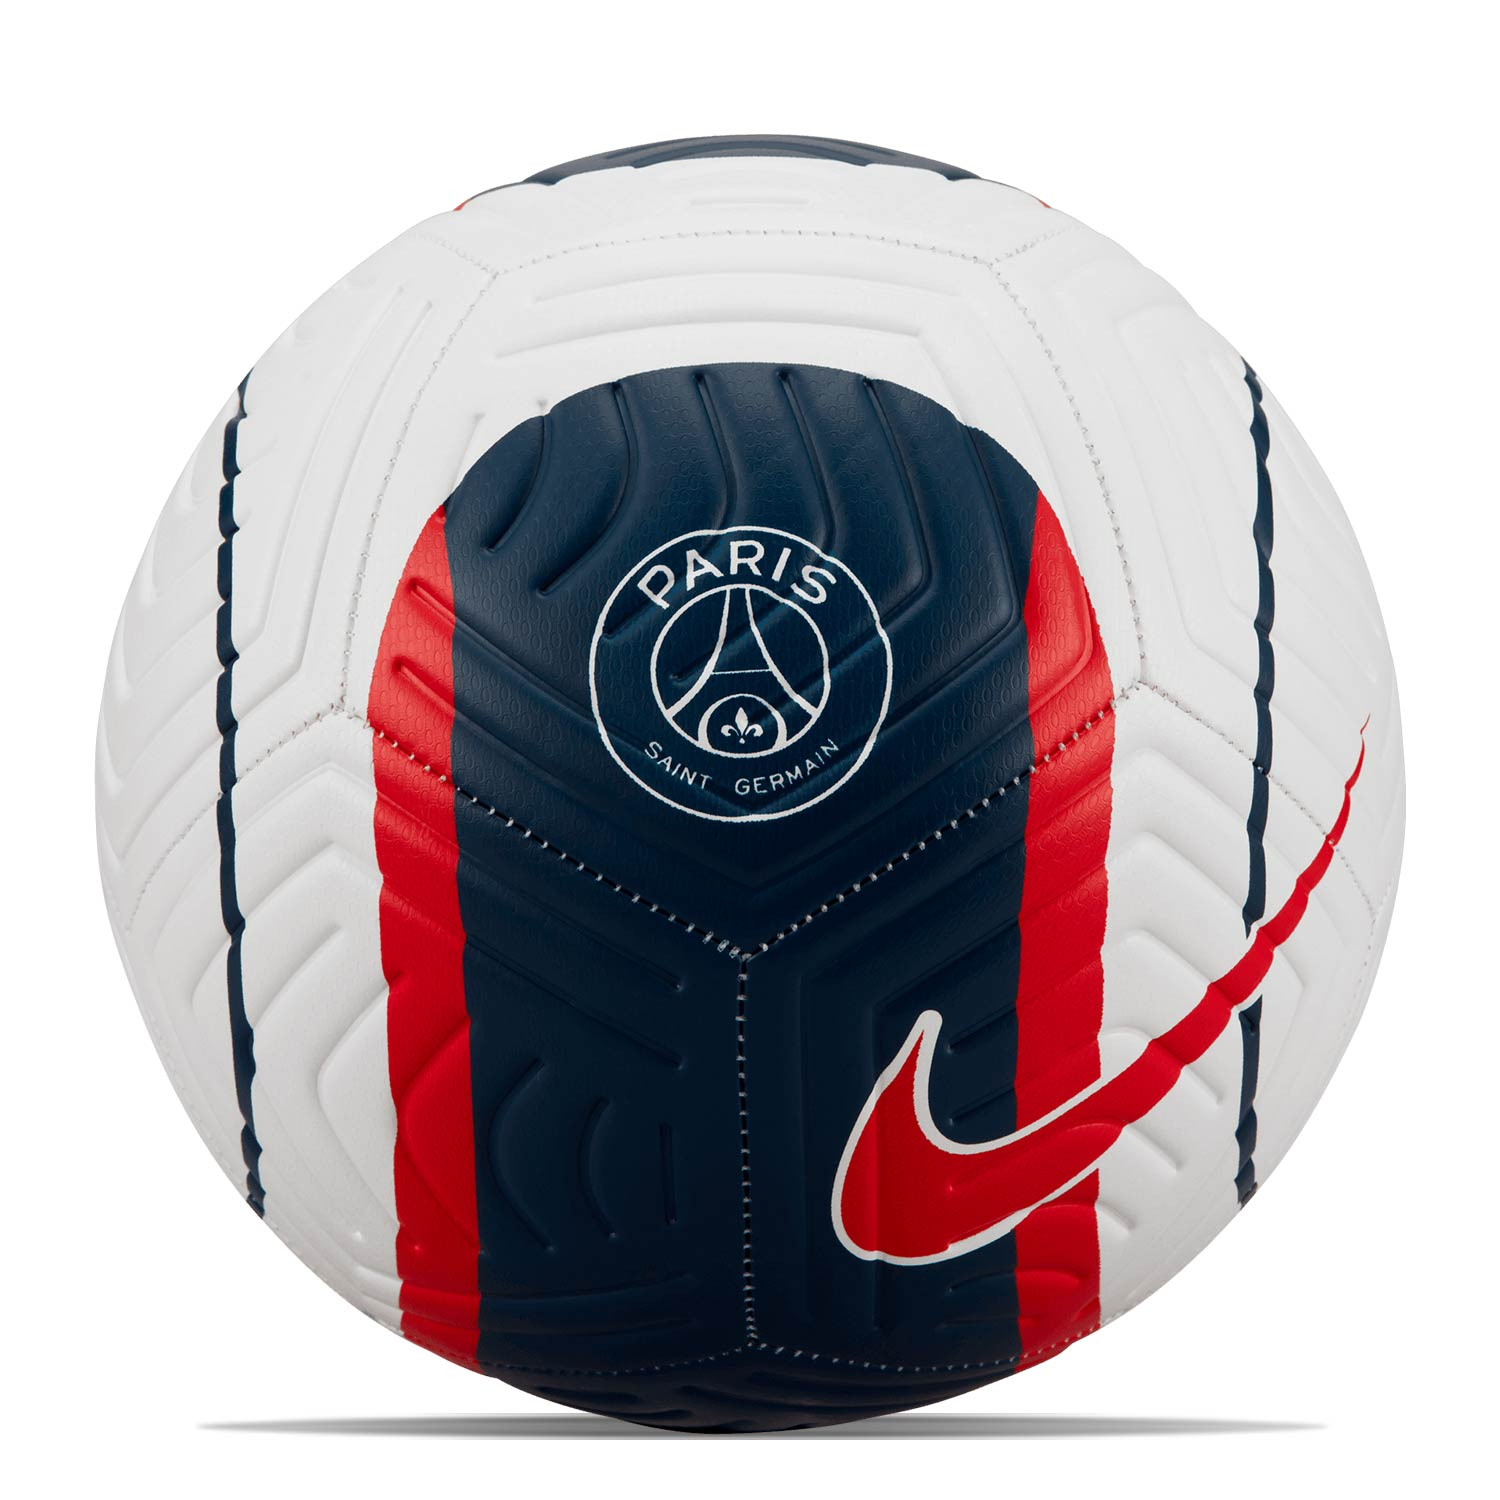 Revisión infierno Sada Balón Nike PSG Strike talla 5 blanco y azul marino | futbolmania